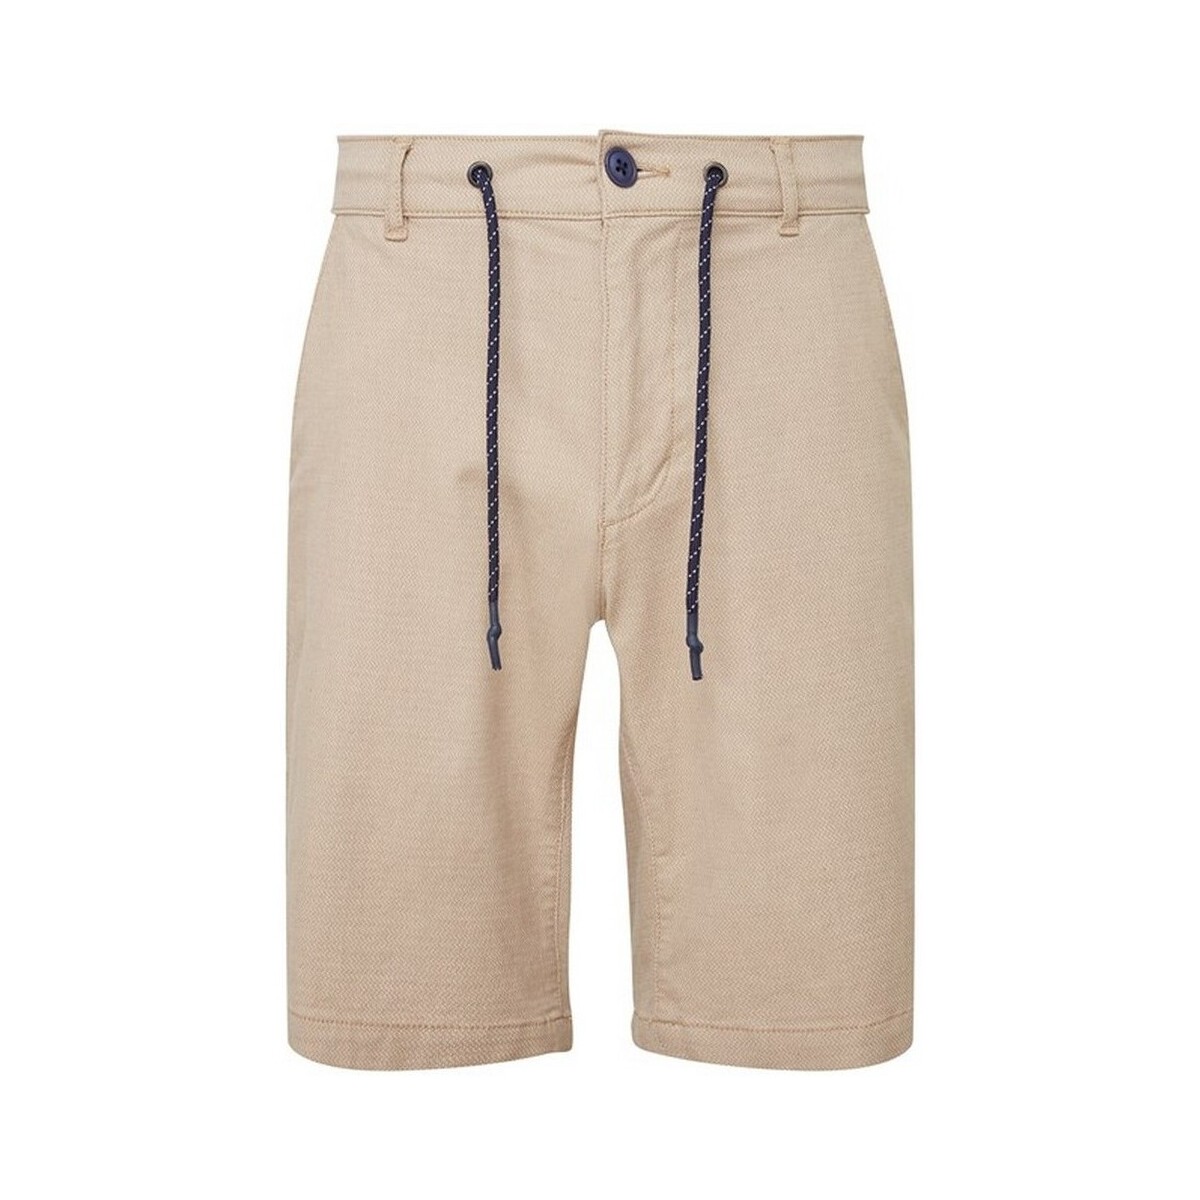 Abbigliamento Uomo Shorts / Bermuda Asquith & Fox AQ057 Beige